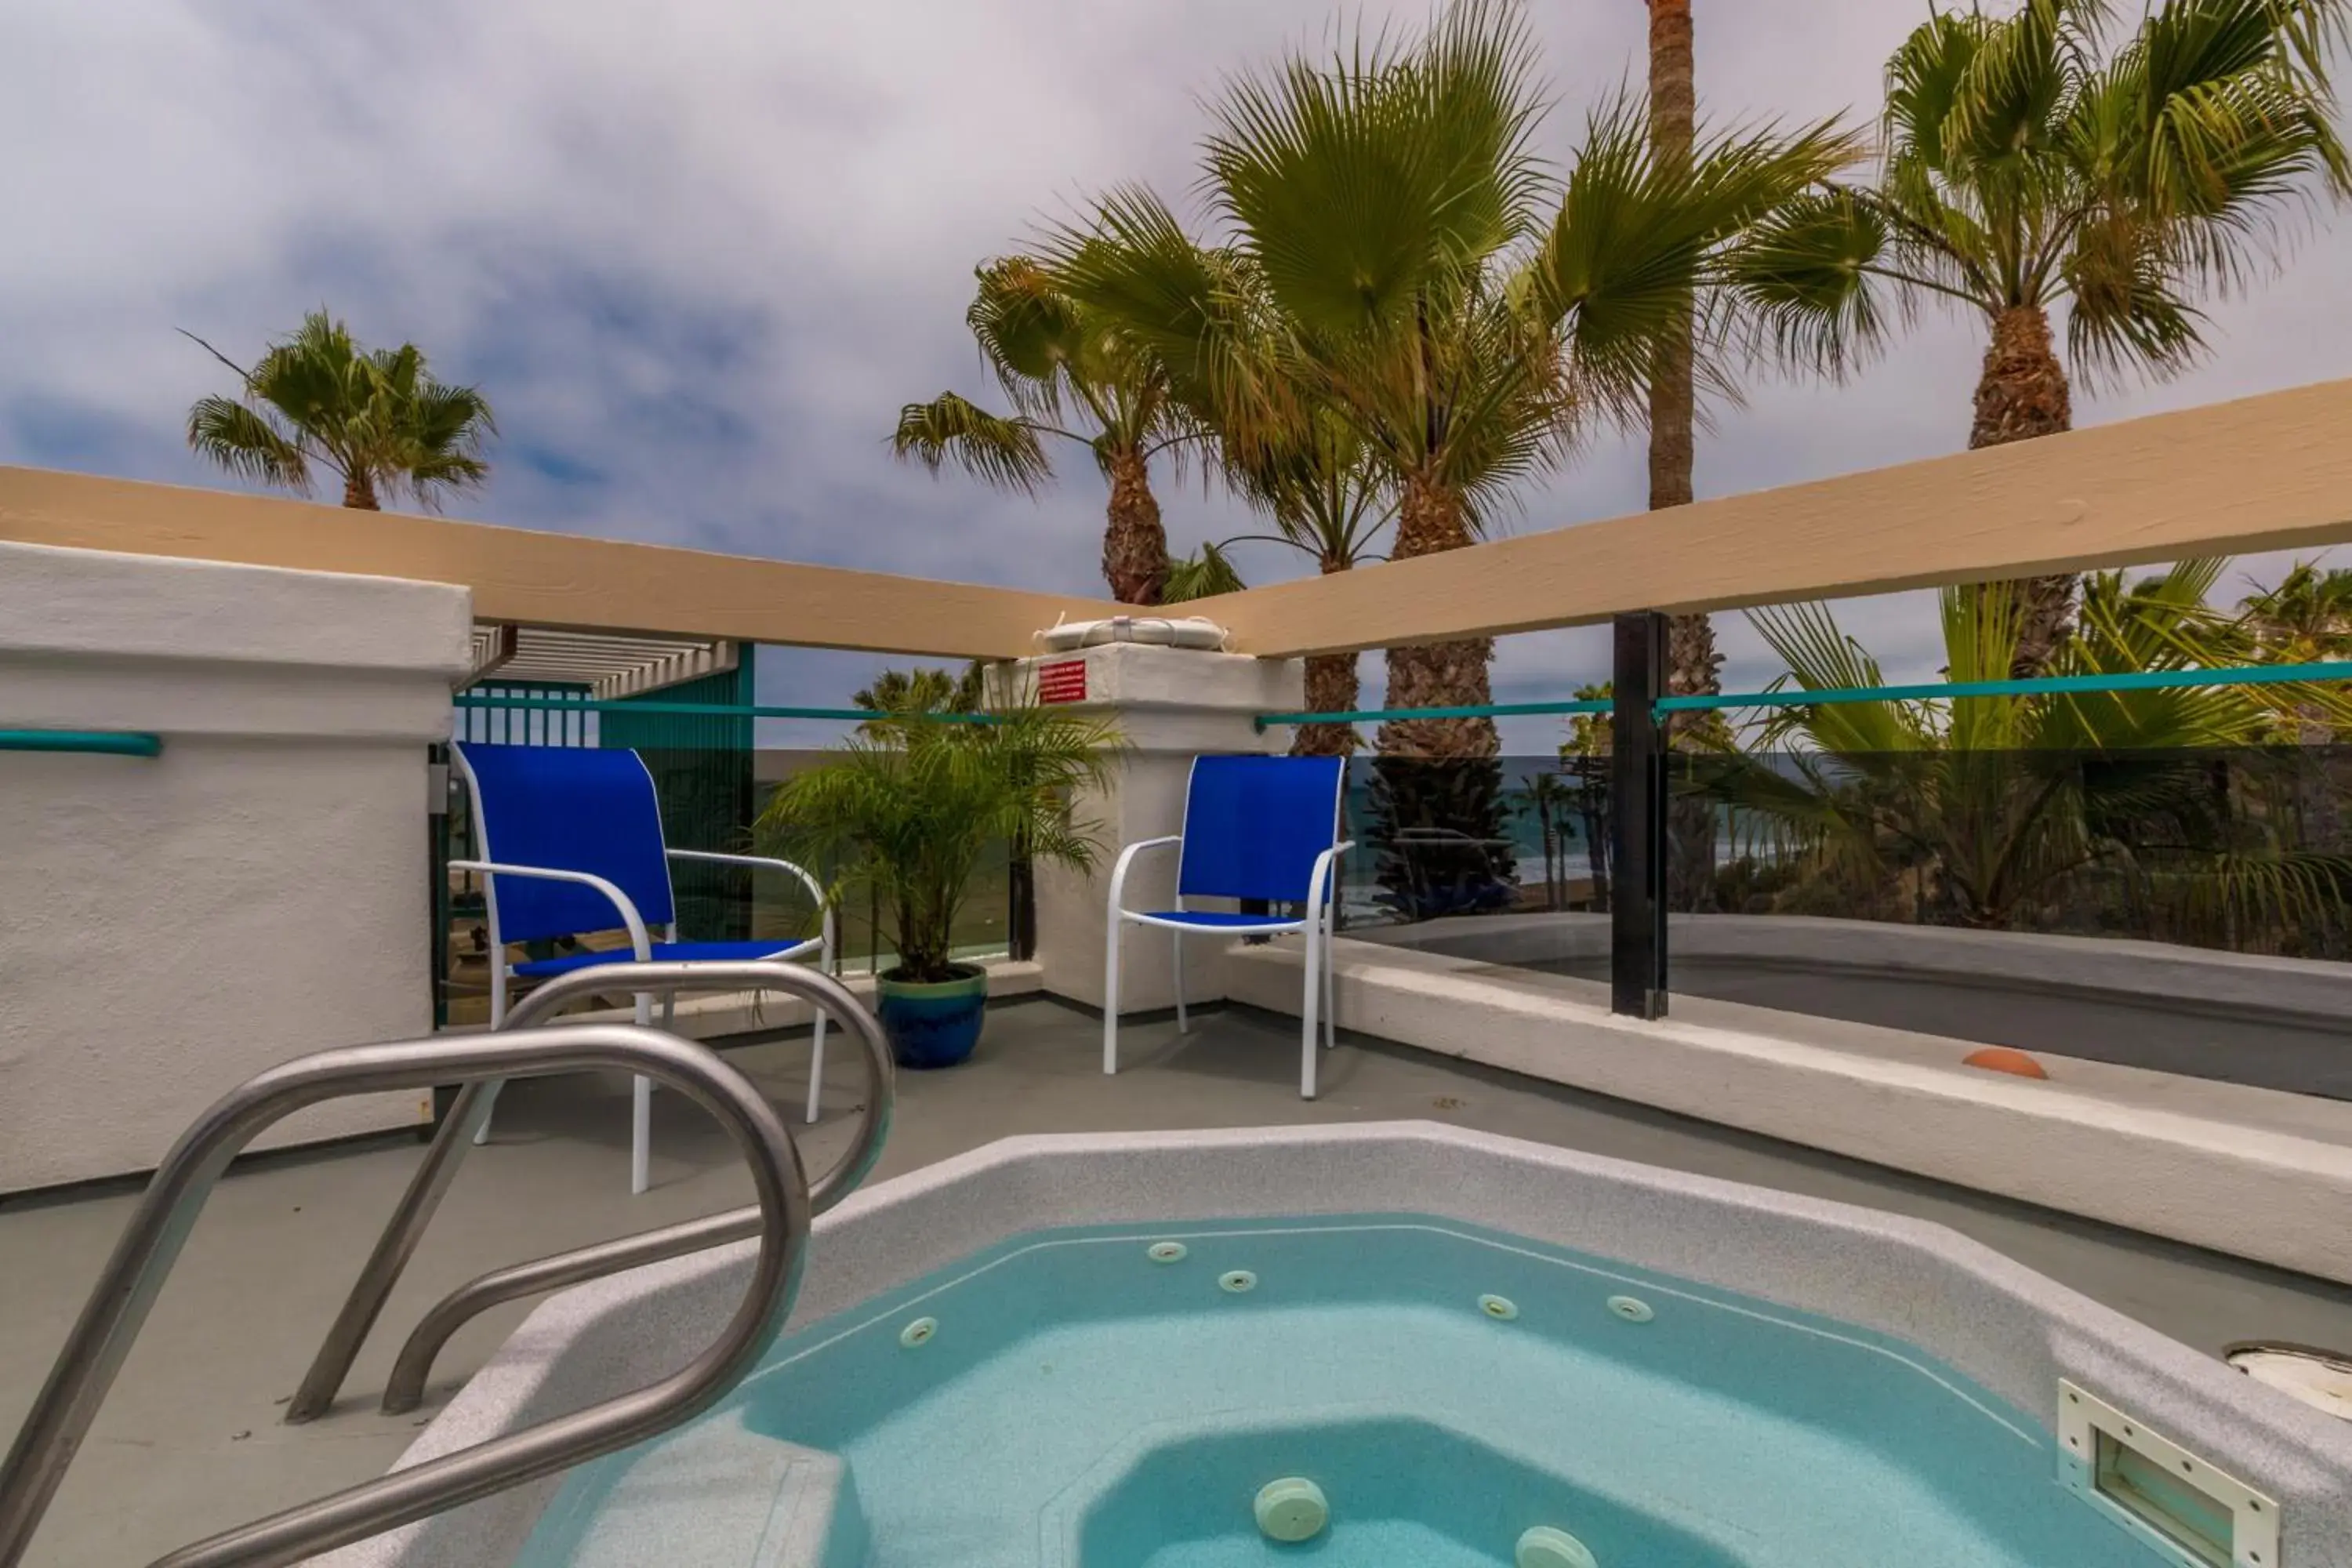 Swimming Pool in San Clemente Cove Resort